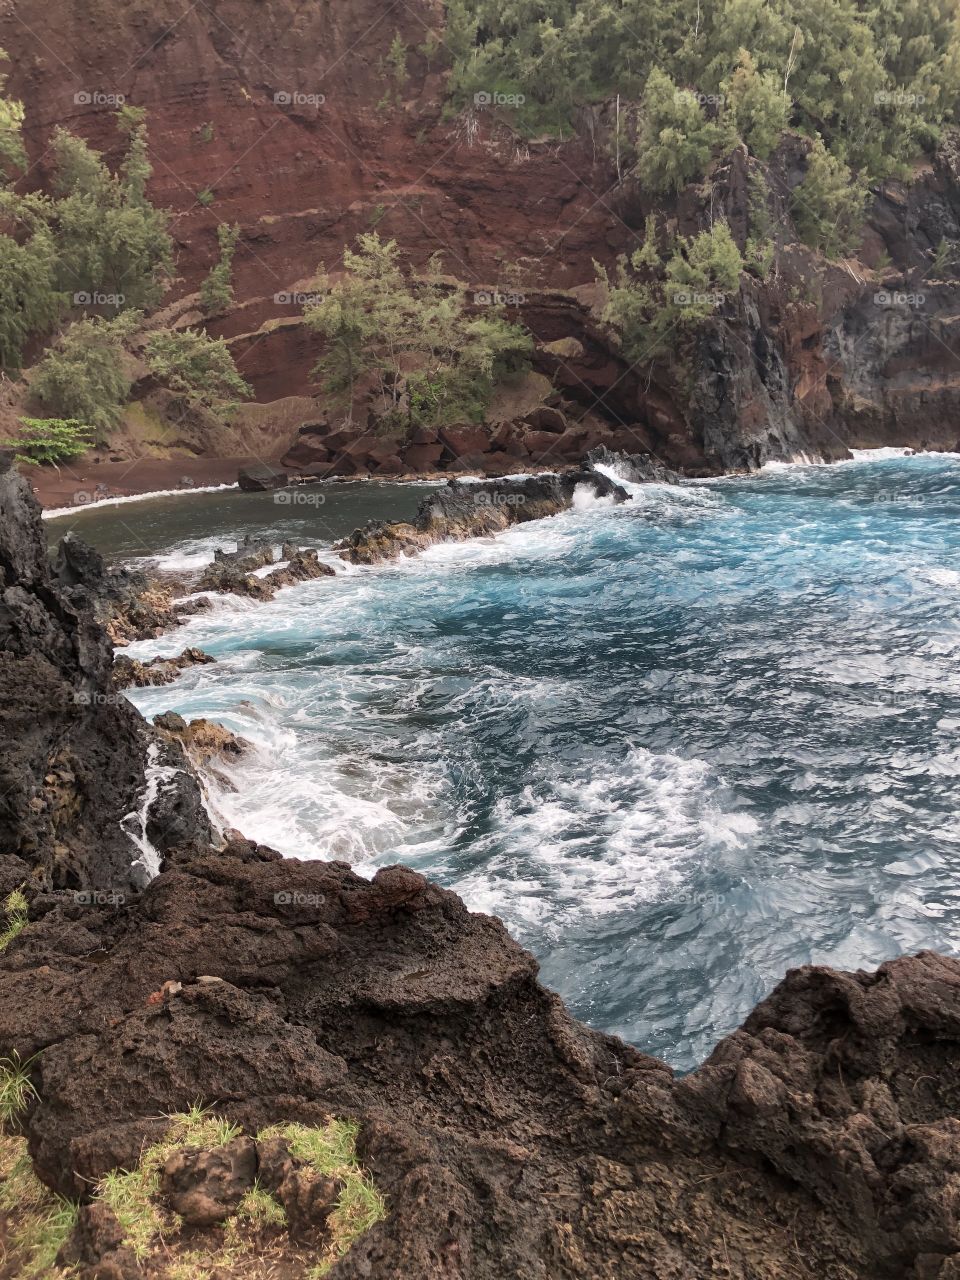 A Maui best-kept secret: Red Sand Beach.